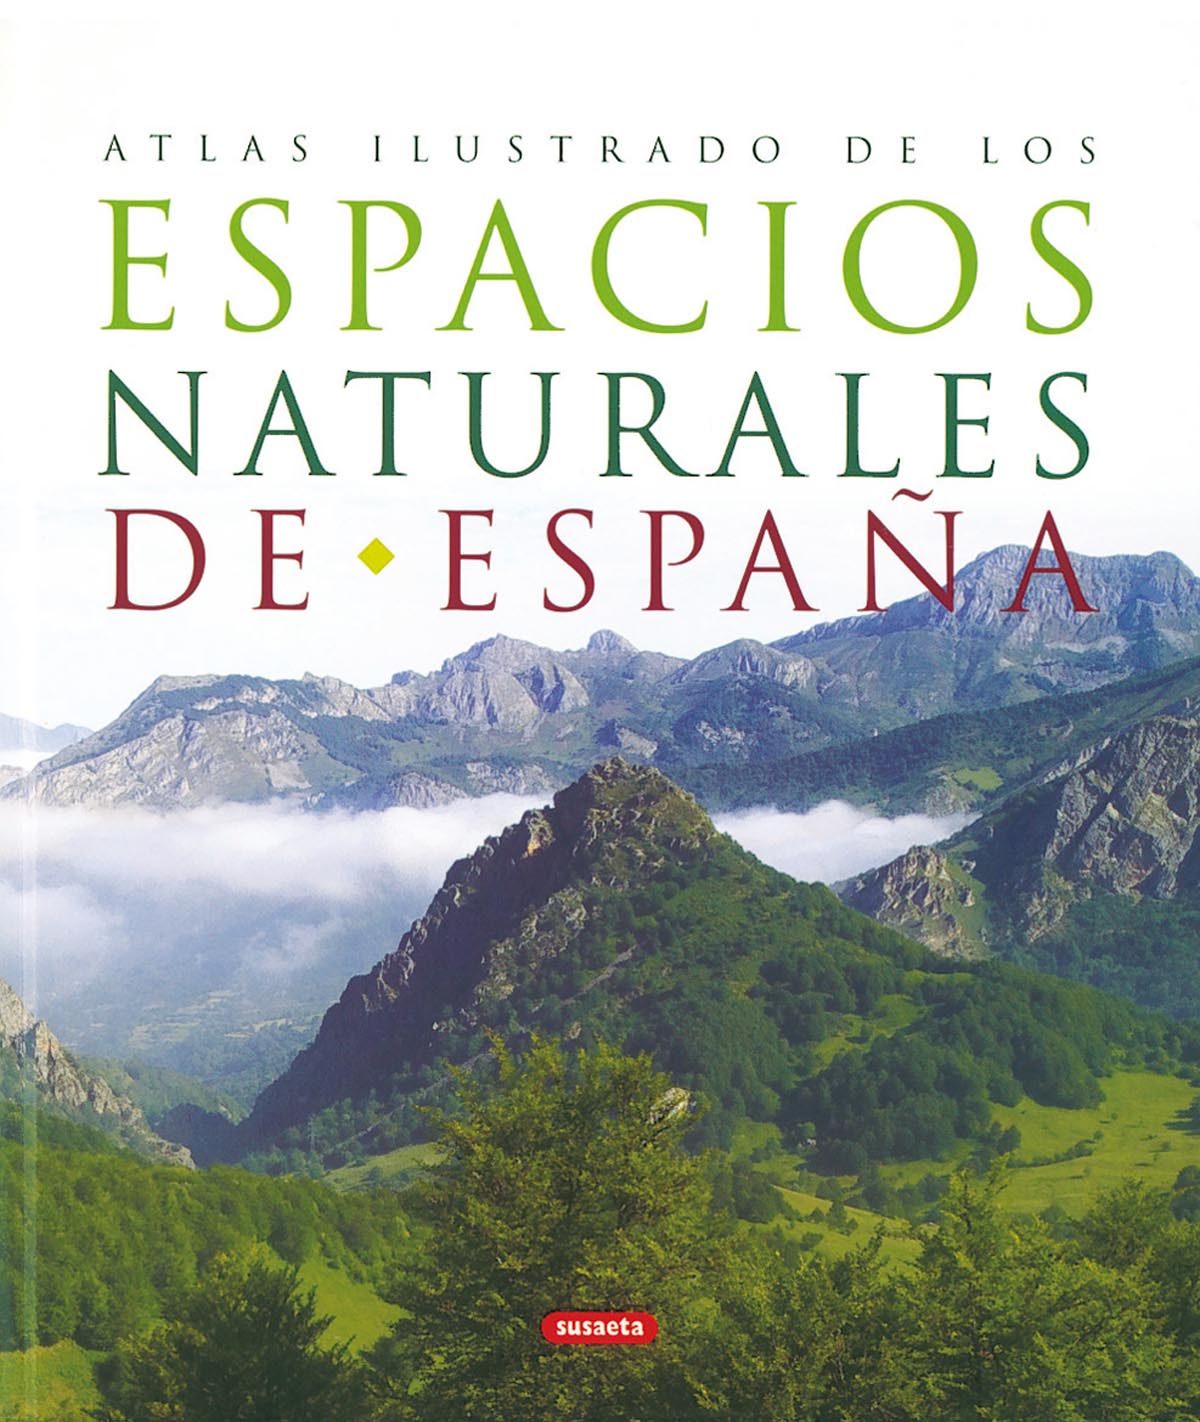 Espacios naturales de España